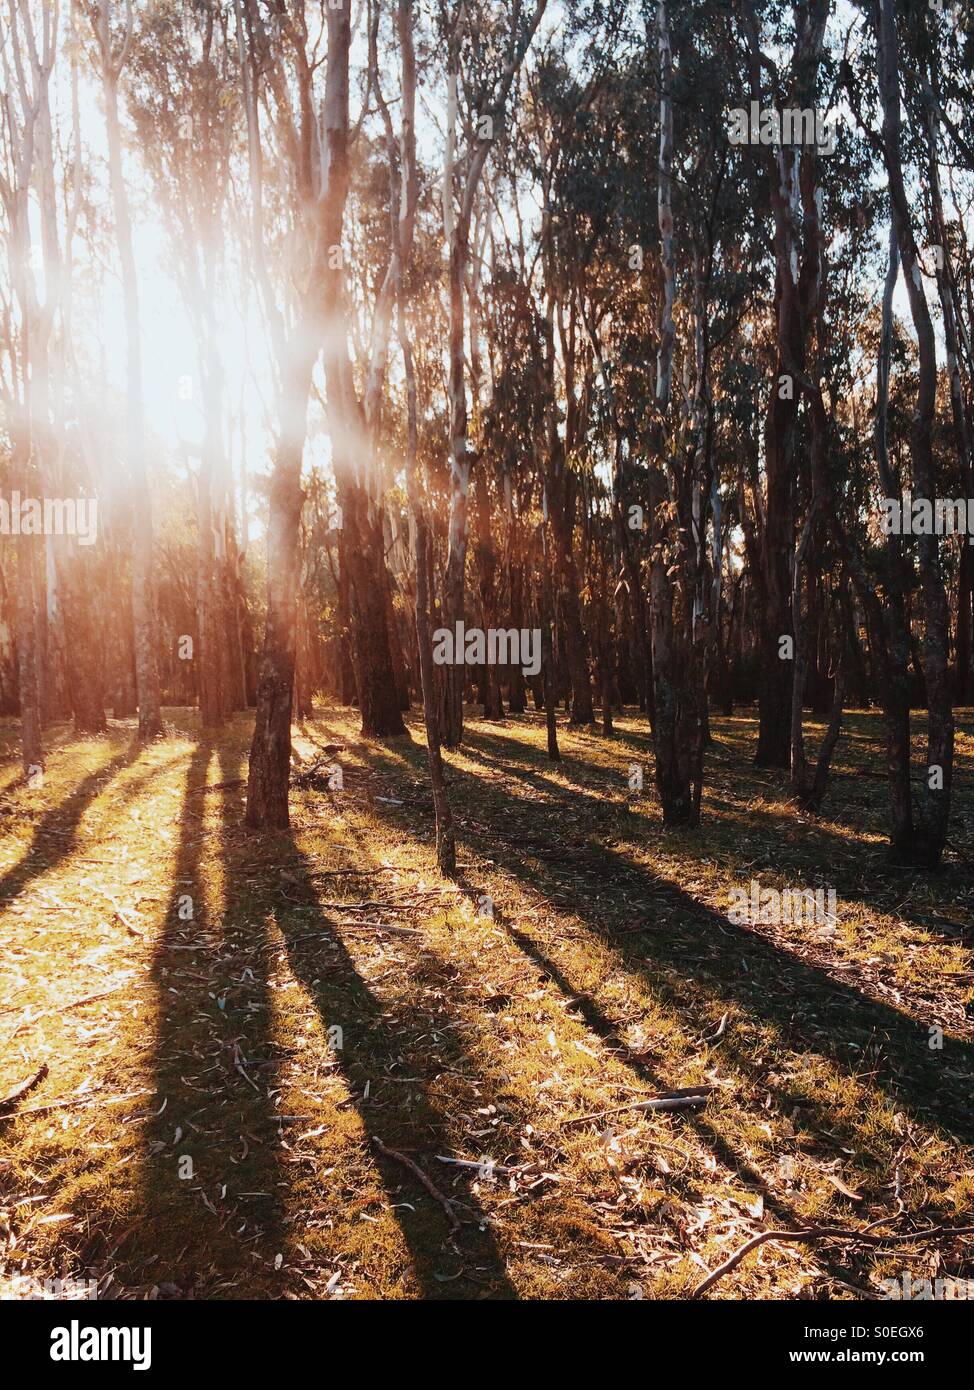 La fin de l'après-midi à travers la forêt d'eucalyptus sun streaming Banque D'Images